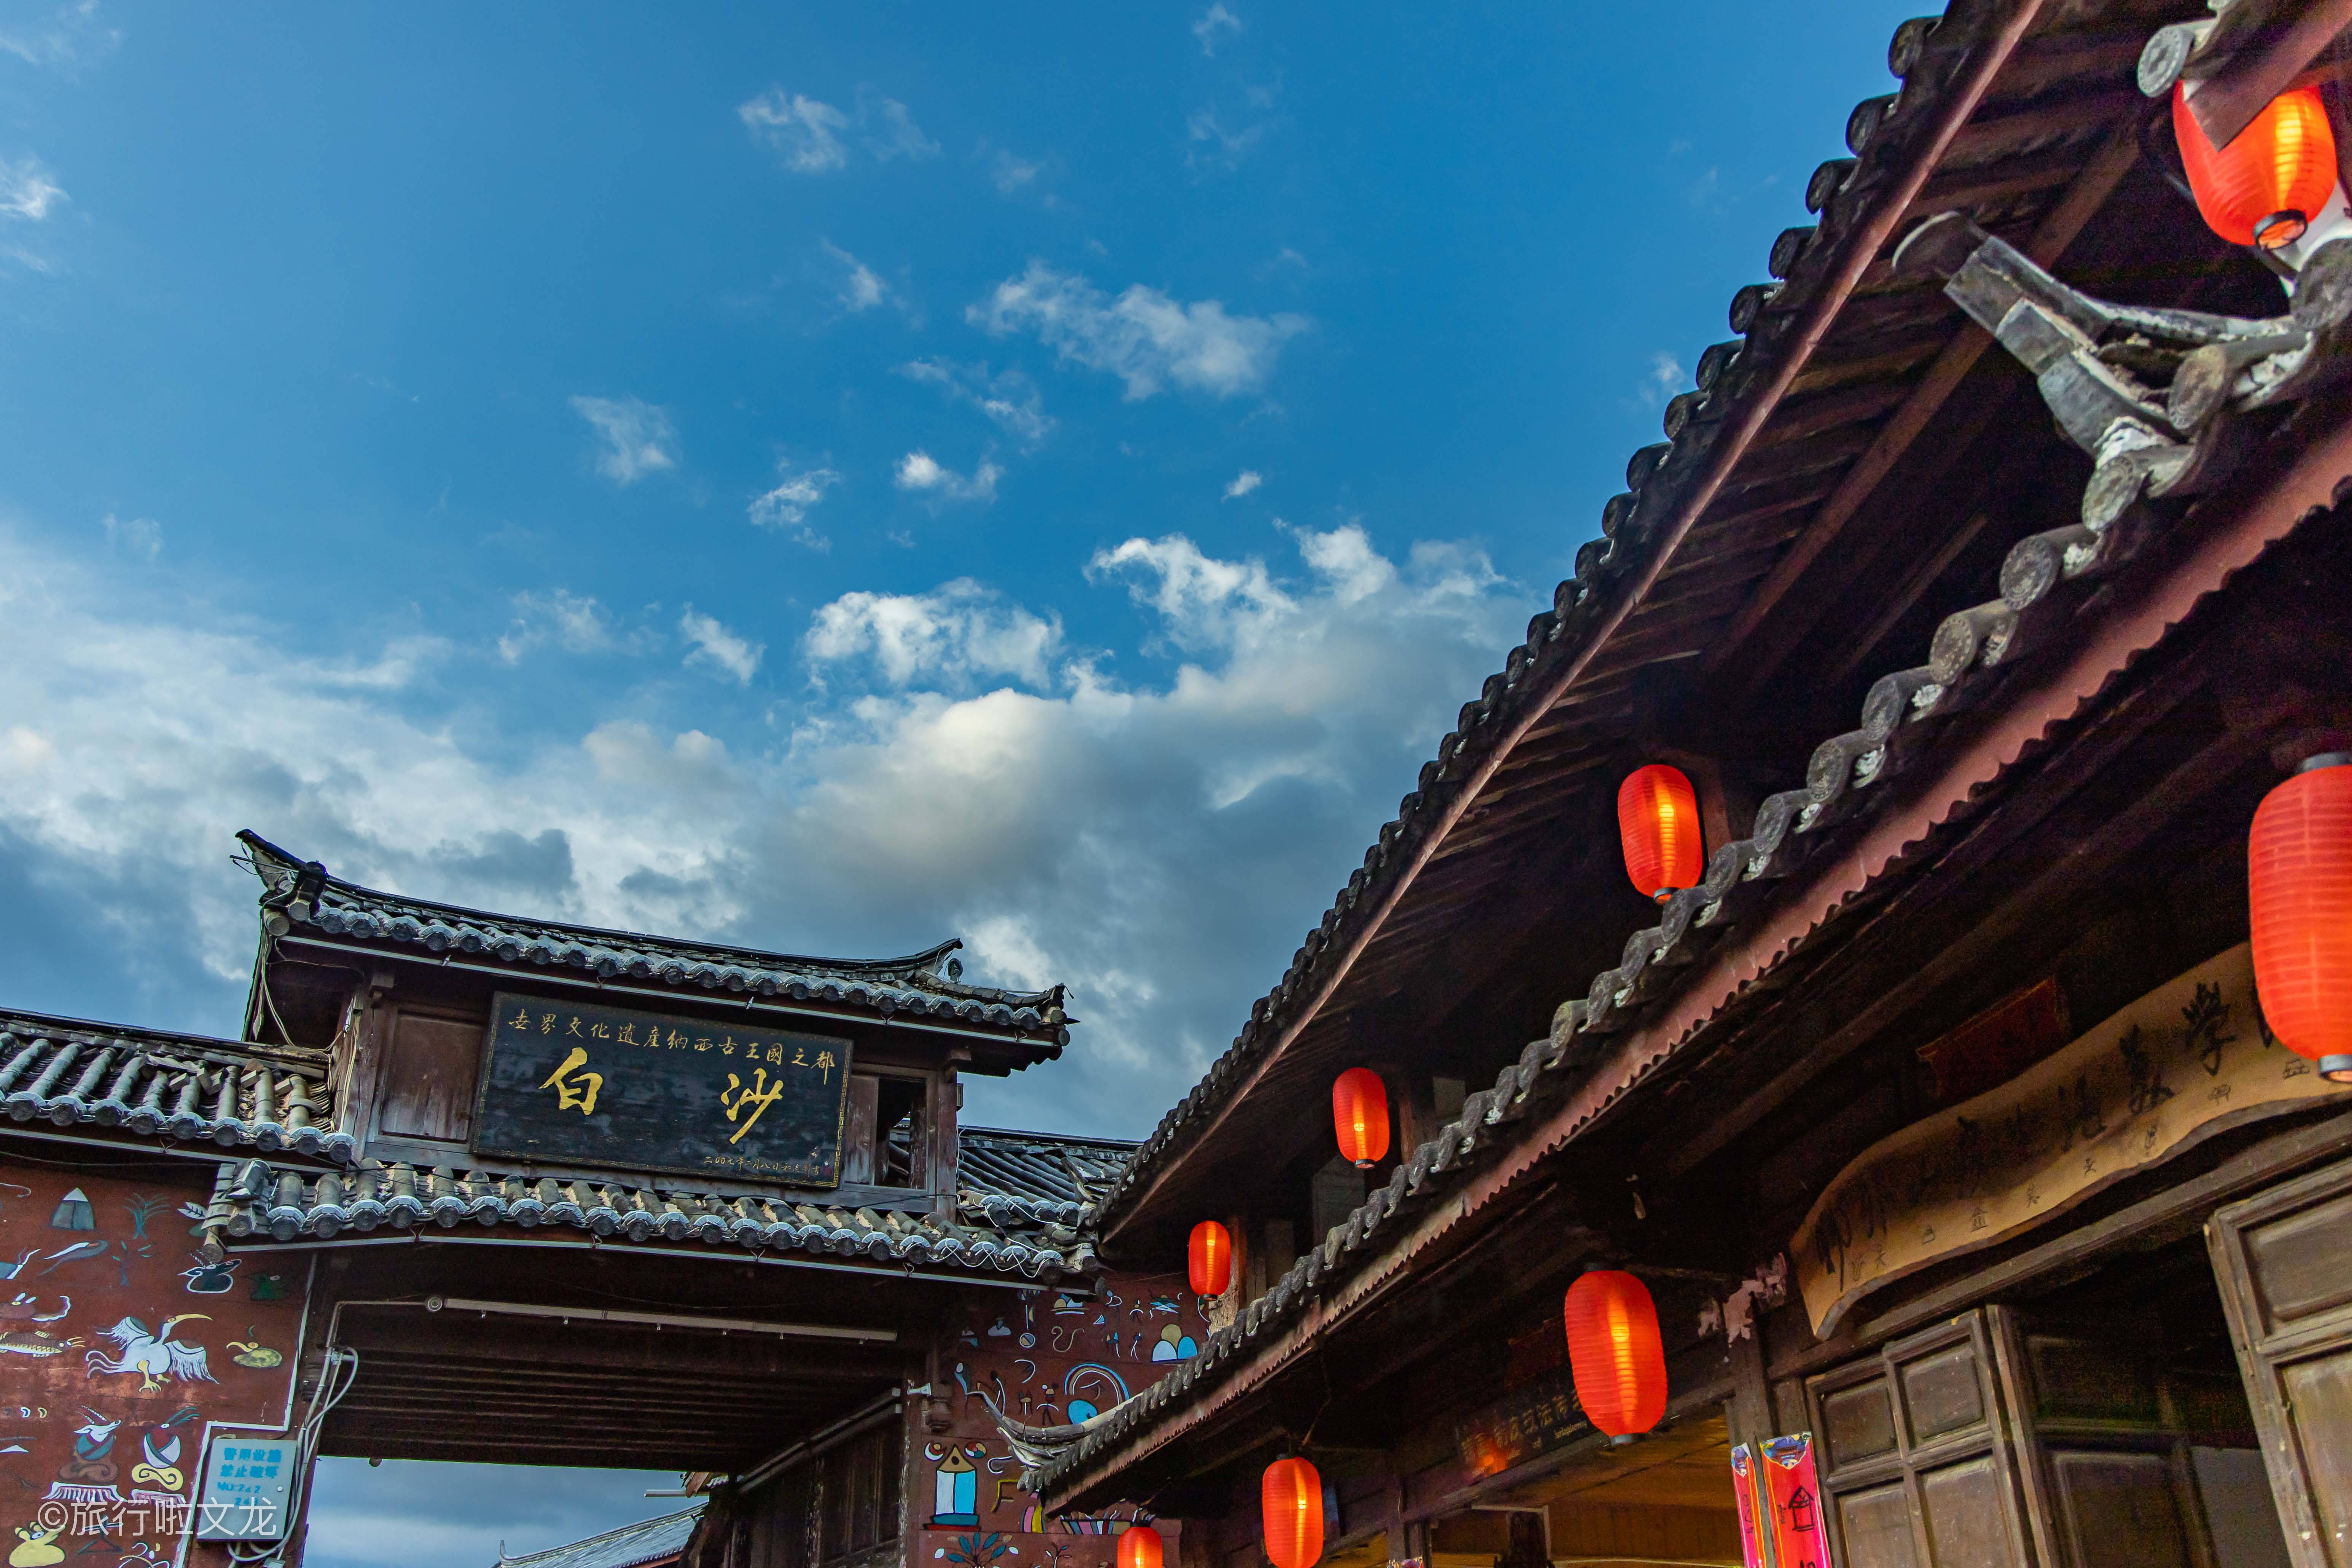 国庆假期去丽江旅游,还是推荐白沙古镇,没有商业氛围文艺十足